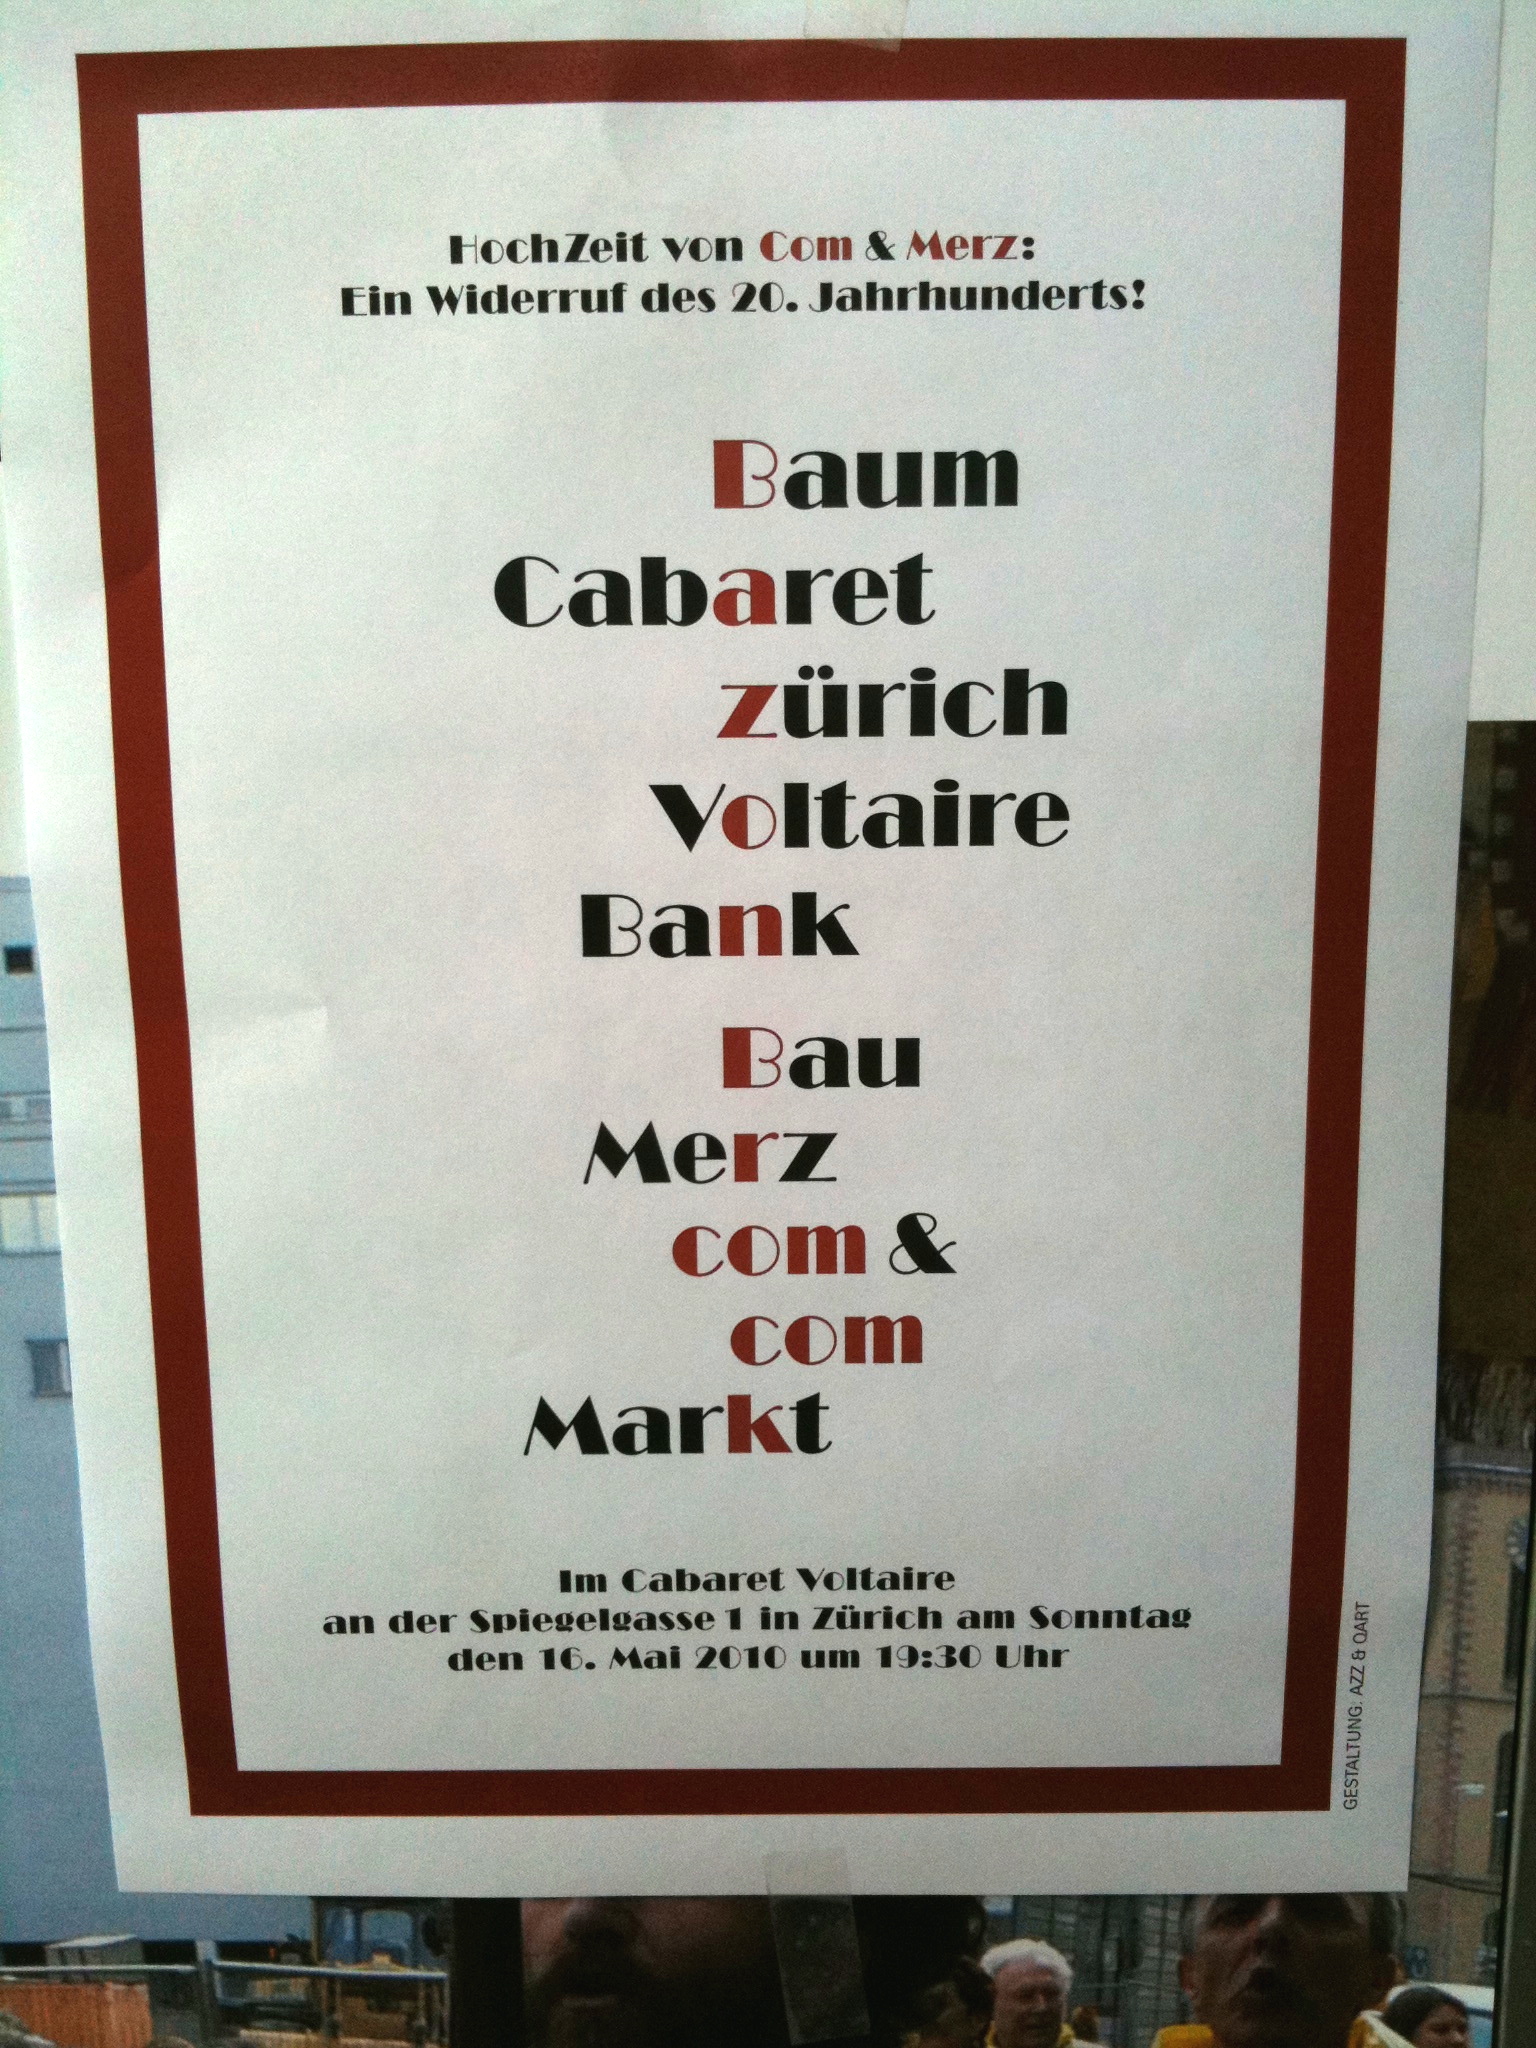 HochZeit von Com & Merz. Ein Widerruf des 20. Jahrhunderts, Bild: Plakat zur Aktion im Cabaret Voltaire Zürich, 16.05.2010.